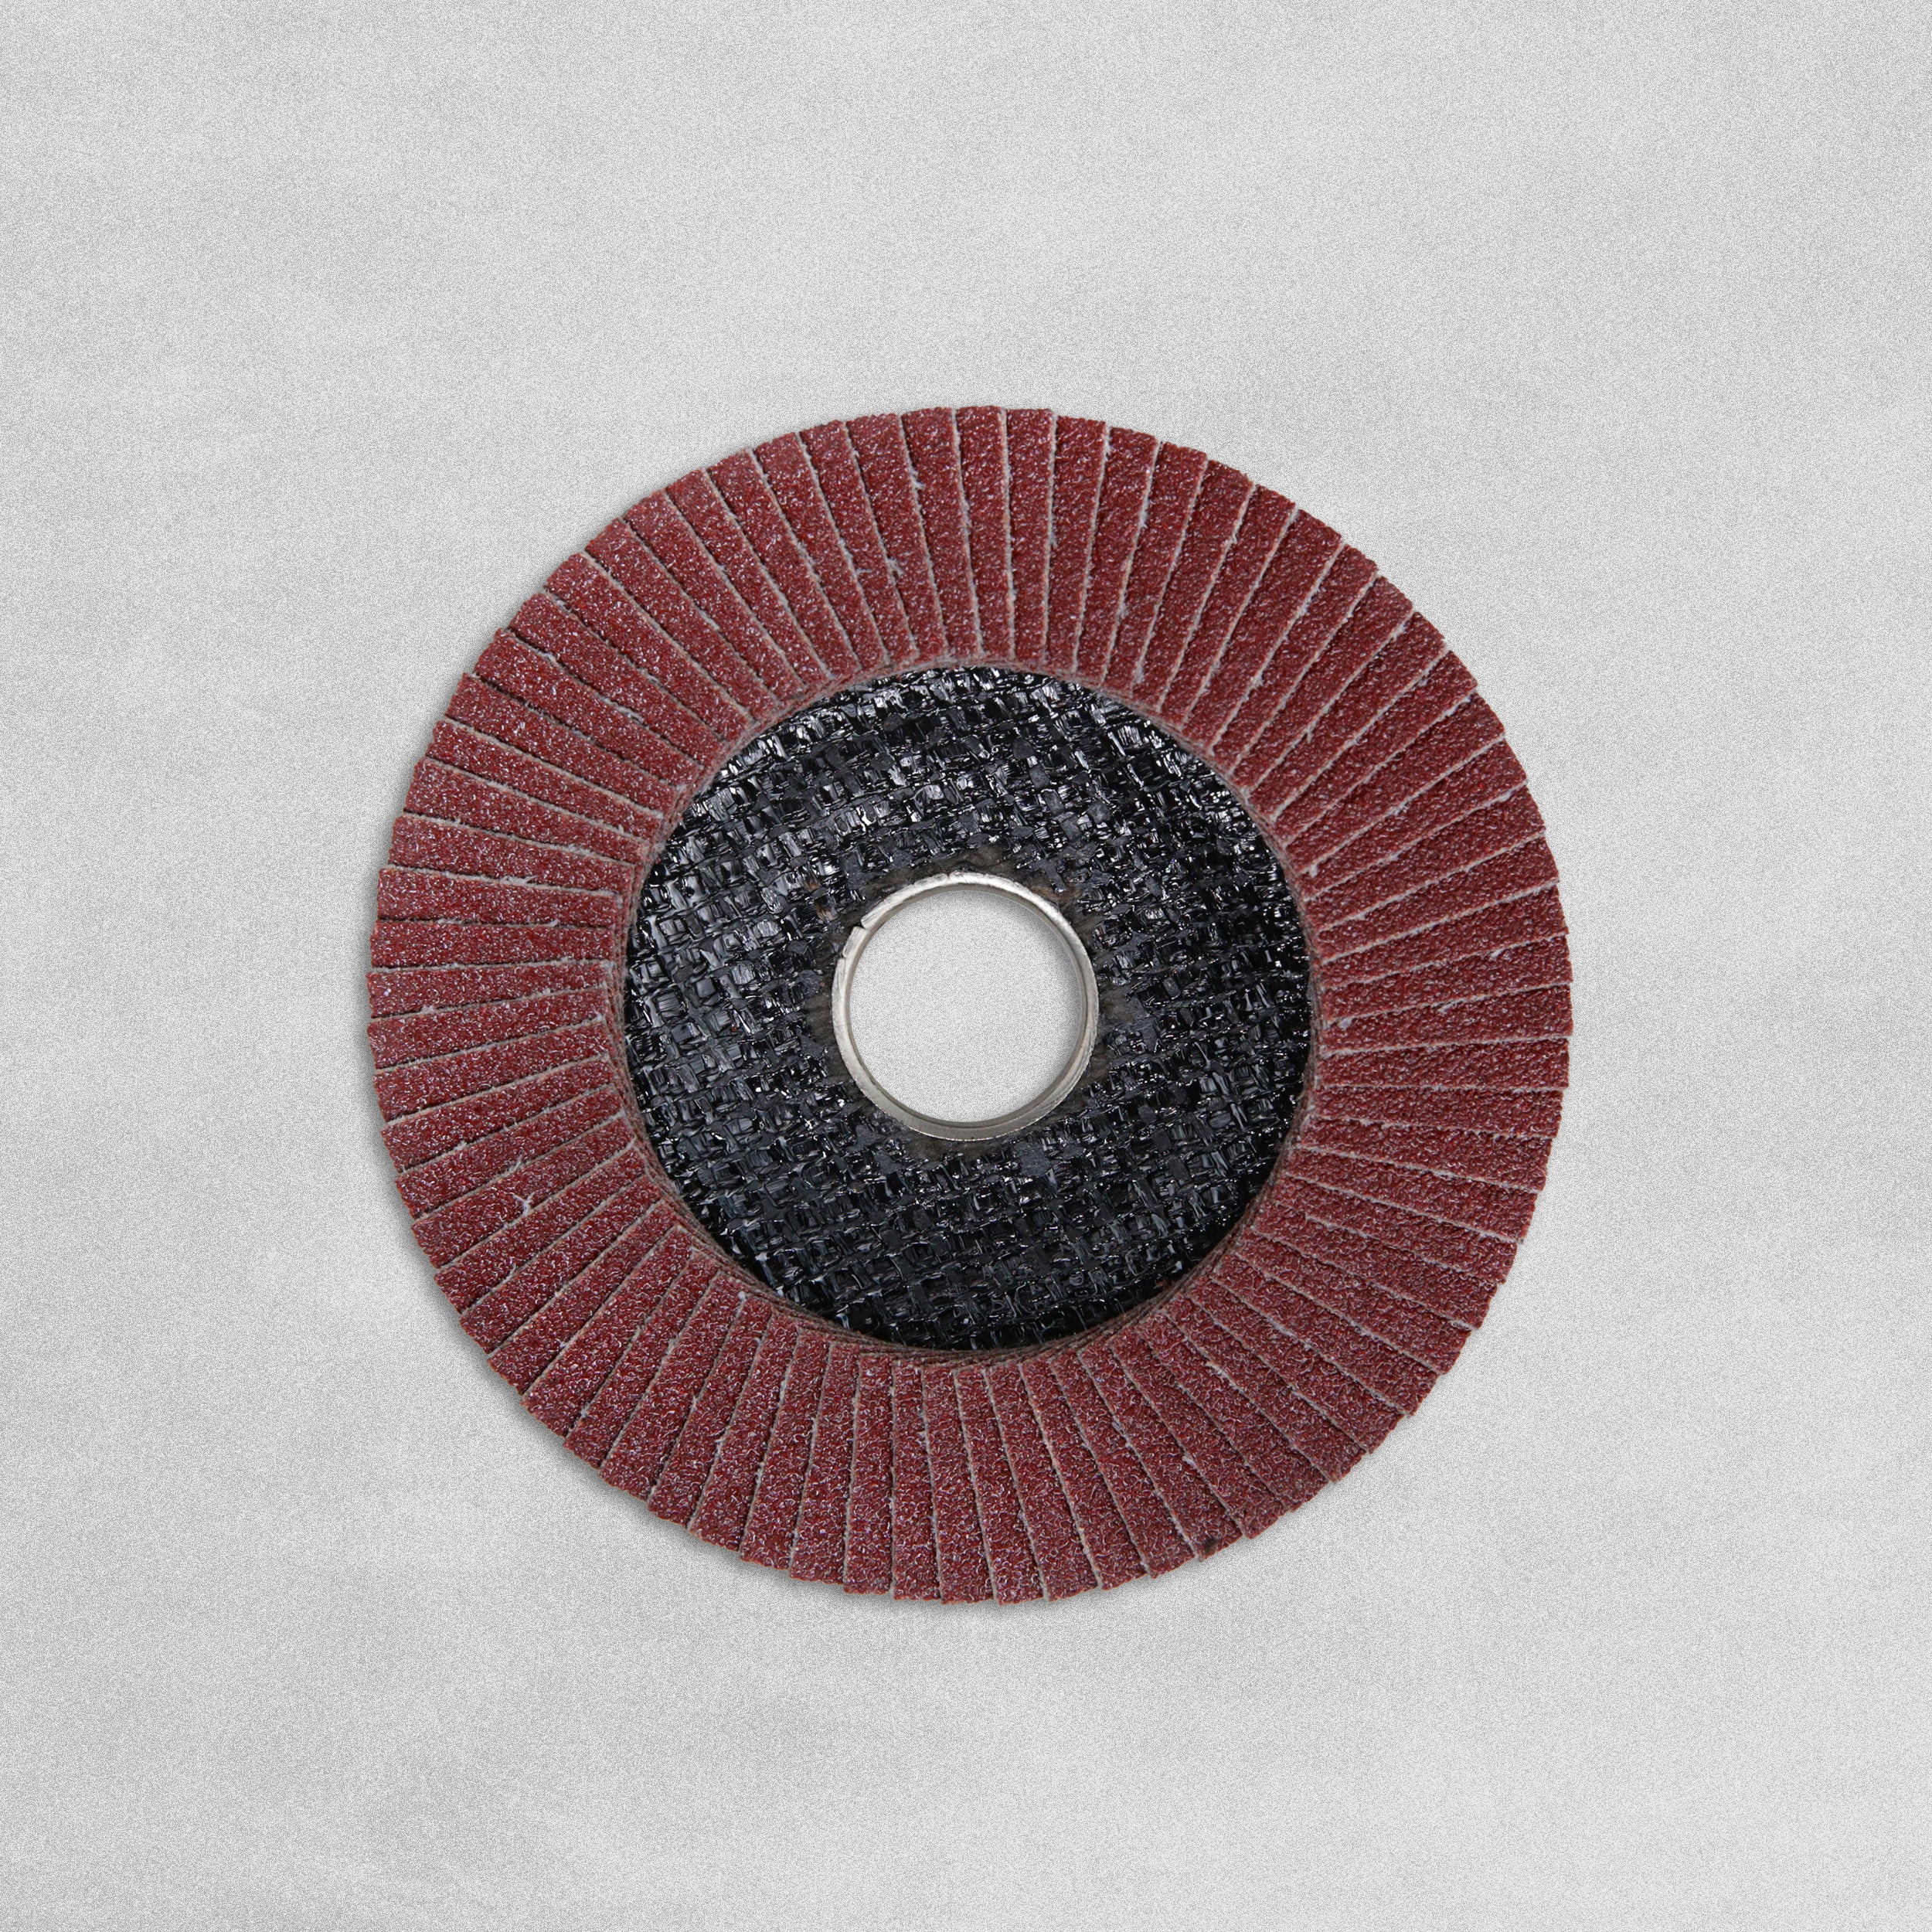 Timco Aluminium Oxide Flap Discs